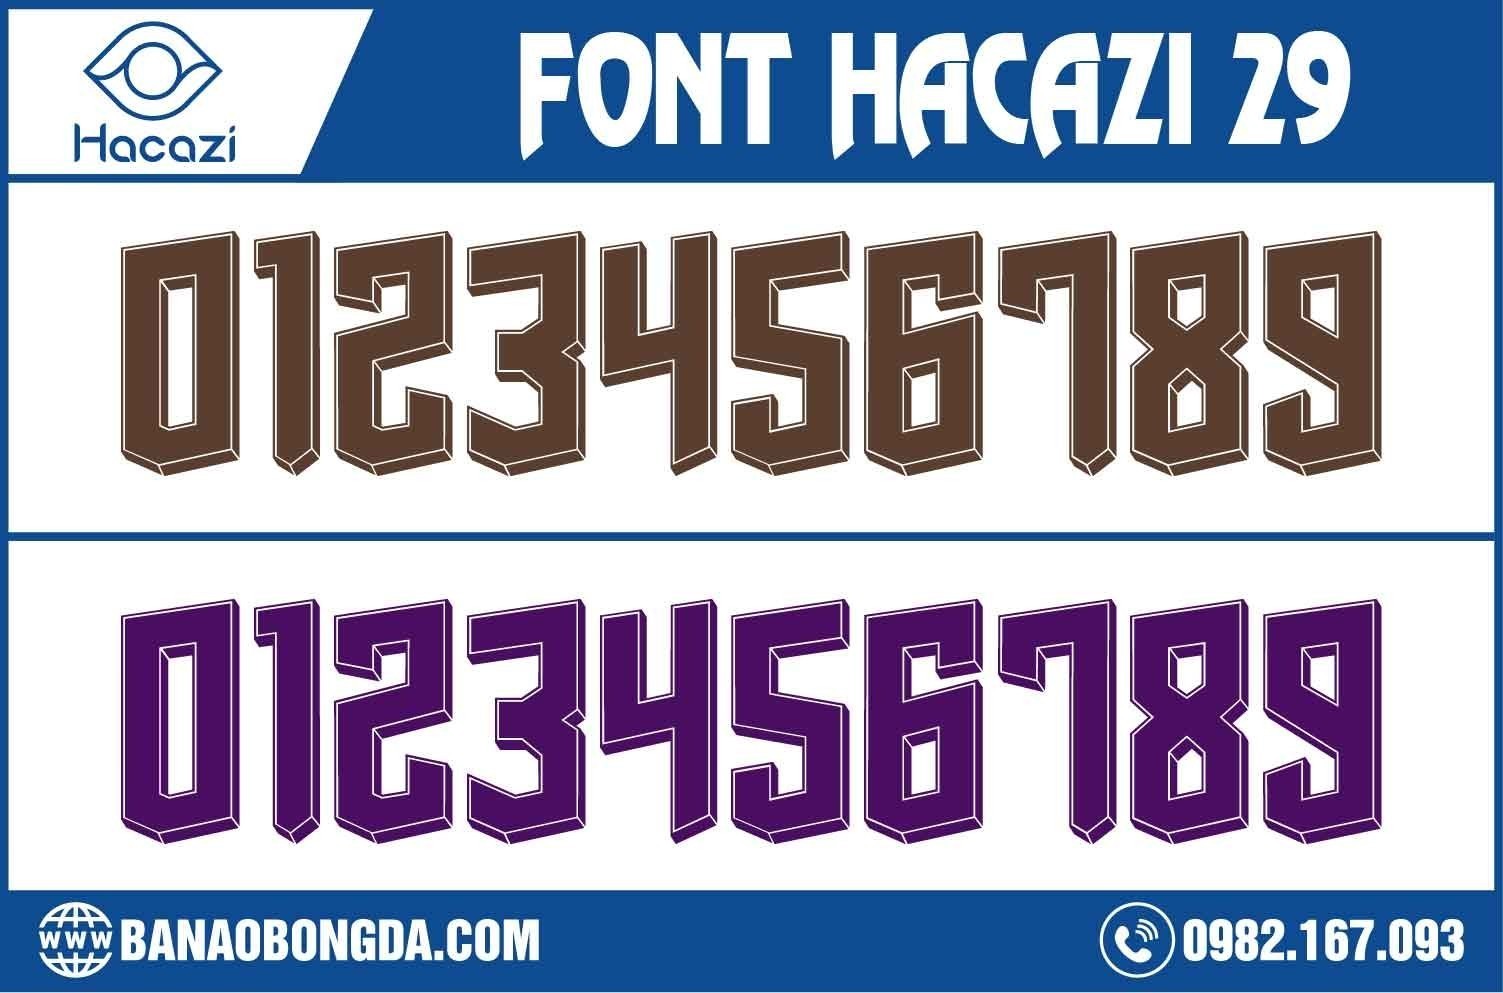  Nếu bạn đang muốn tìm cho mình một mẫu áo bóng đá mới bằng bộ font số đặc biệt. Vậy thì đừng quên tham khảo bộ font số áo bóng đá 29 nằm trong bộ sưu tập mới nhất này của Shop Hacazi Sport chúng tôi nhé. 